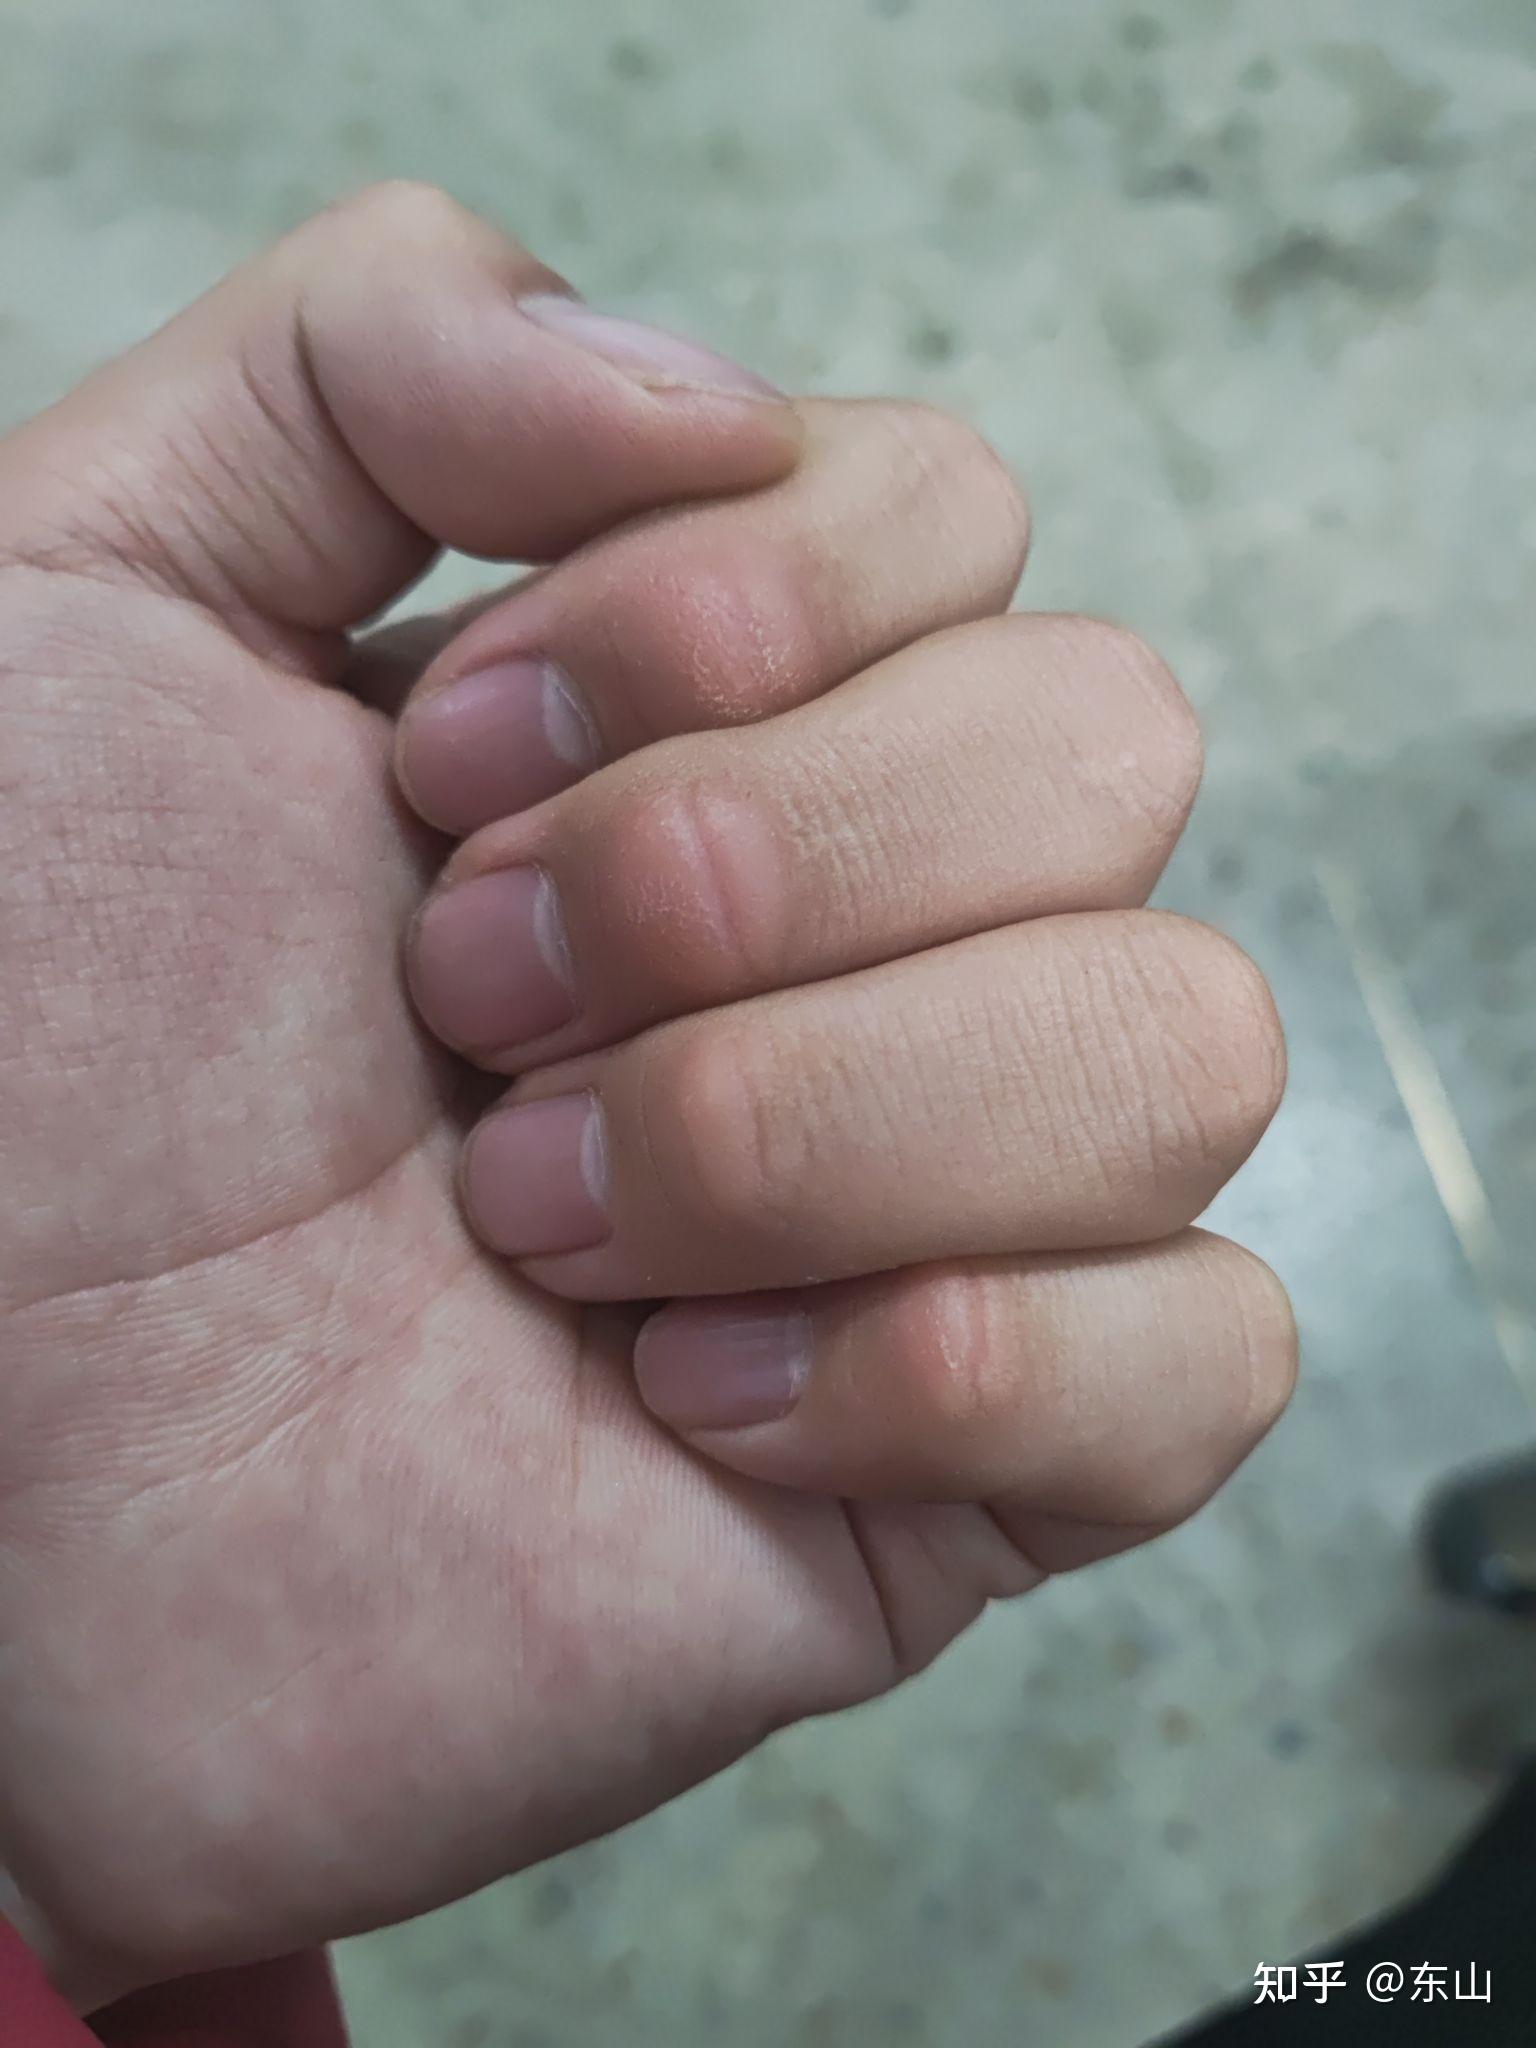 为什么手指关节上会长一些像是茧子的死皮? 